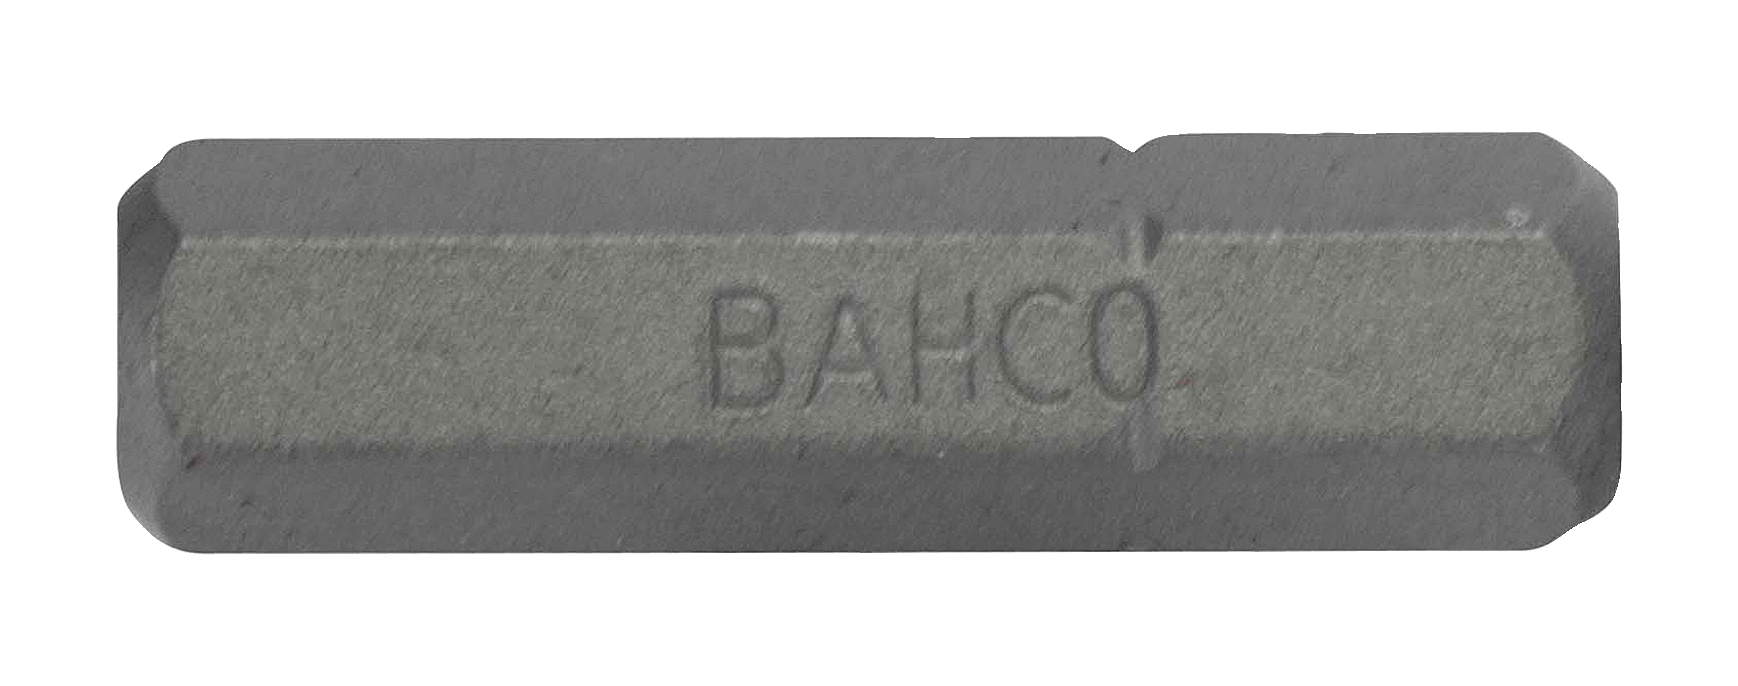 картинка Стандартные биты для отверток под винты с шестигранной головкой, дюймовые размеры, 25 мм BAHCO 59S/H1/4-3P от магазина "Элит-инструмент"